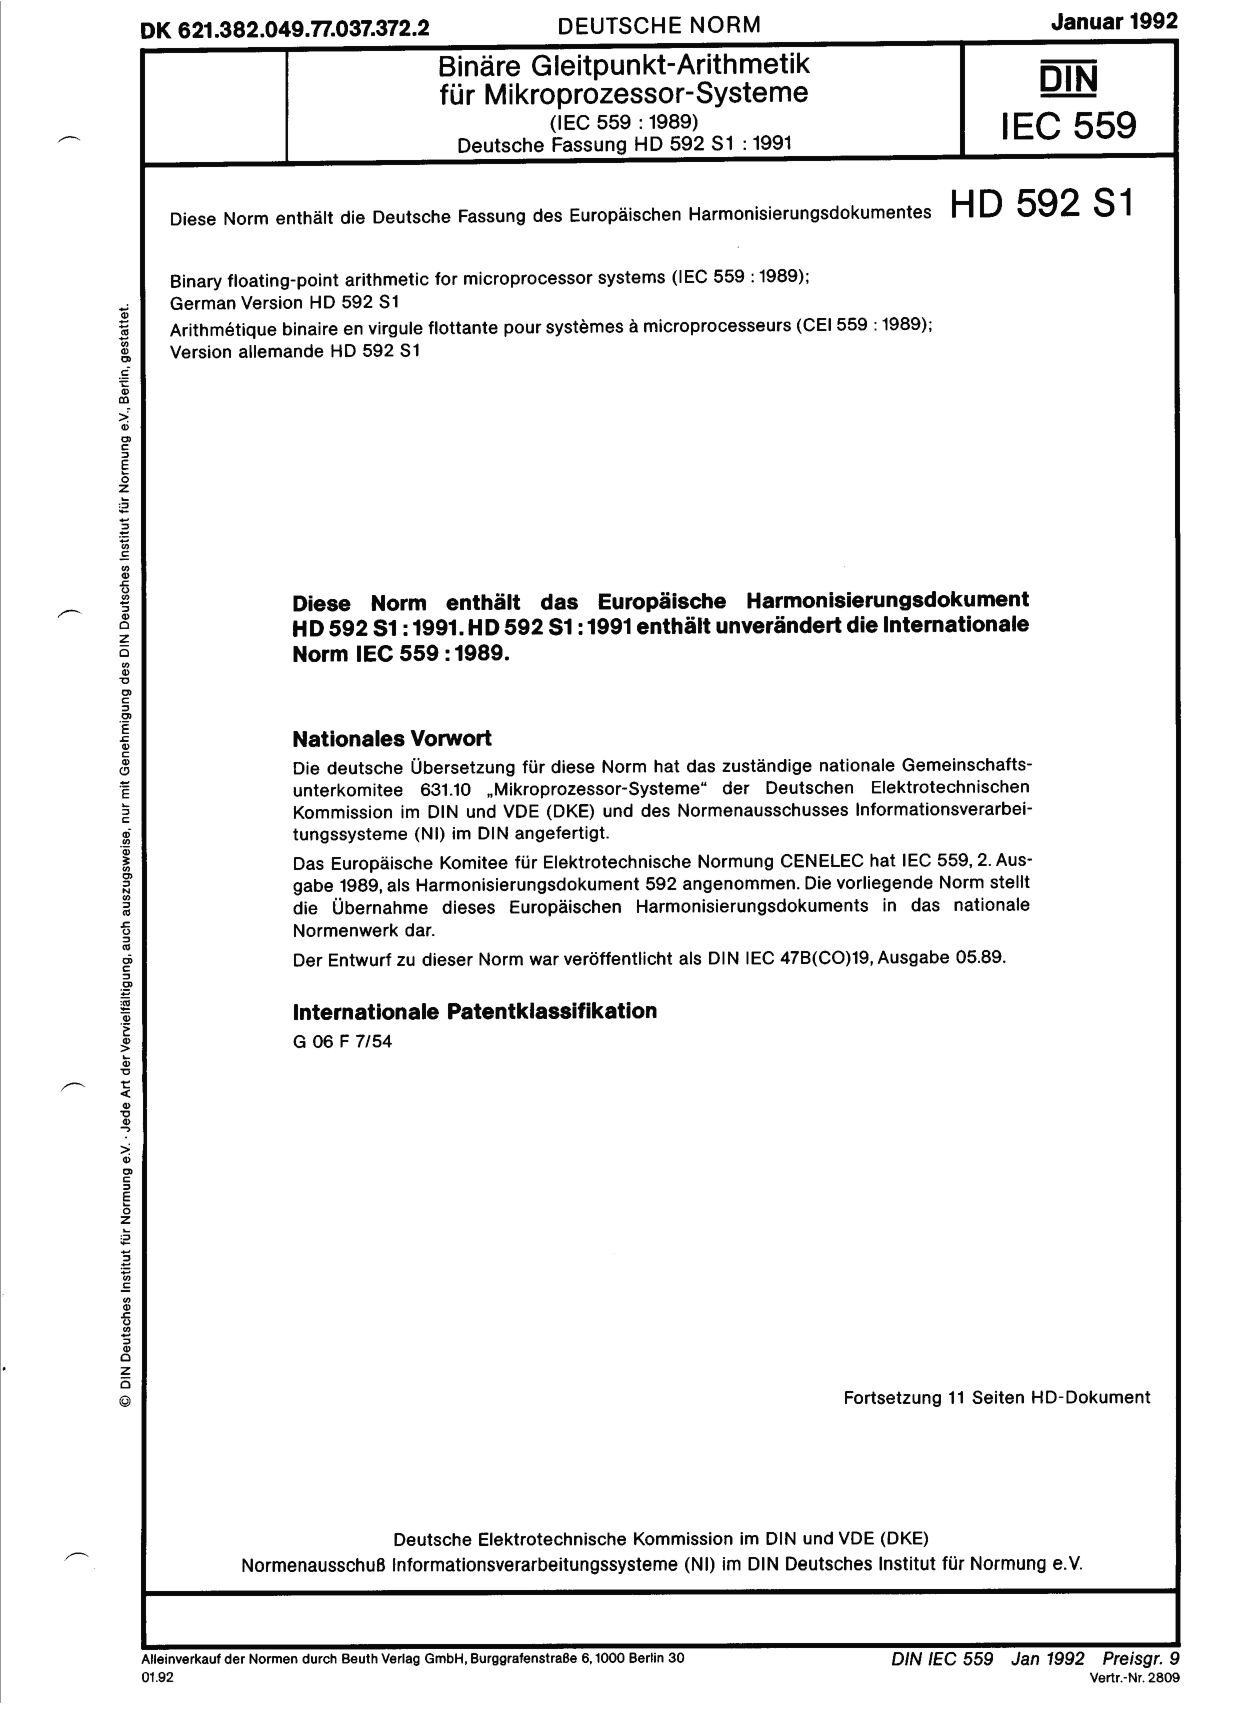 DIN IEC 60559:1992